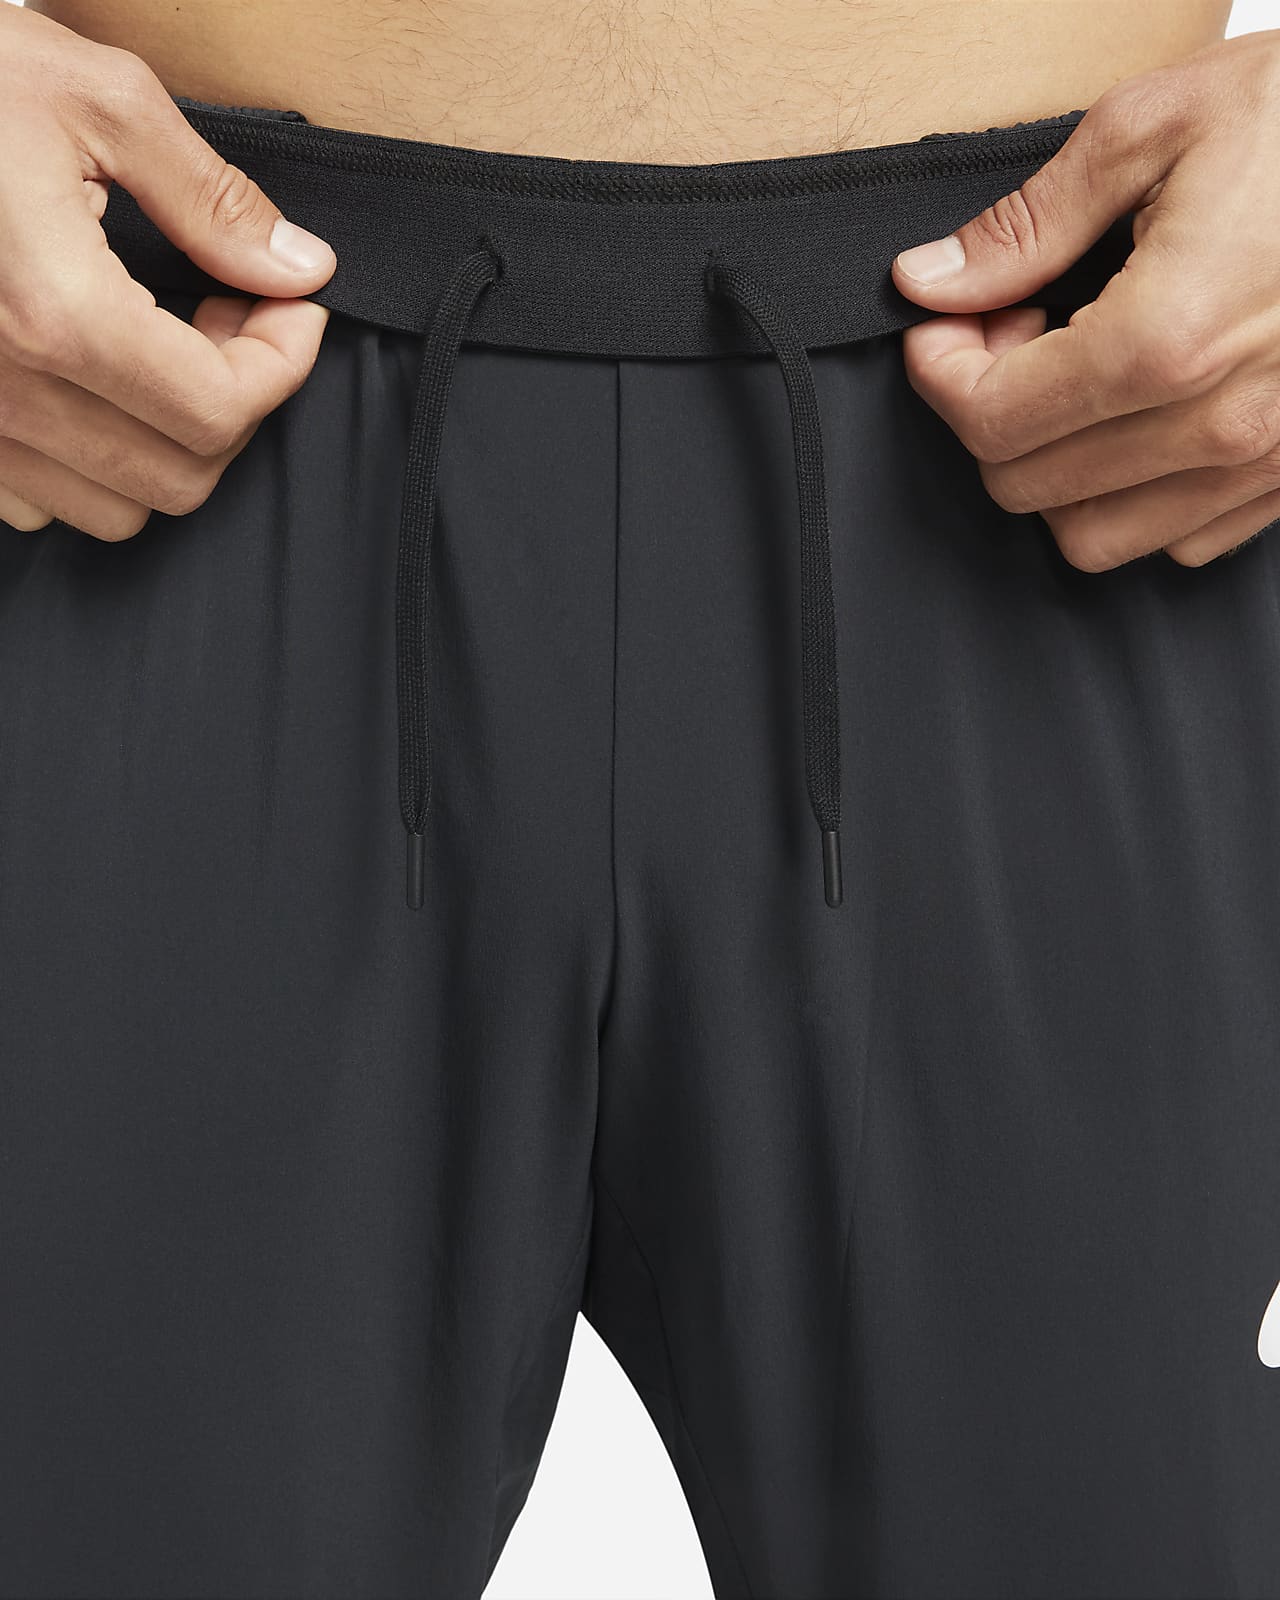 Nike Pro Dri-FIT Vent Max Men's Training Pants | lupon.gov.ph